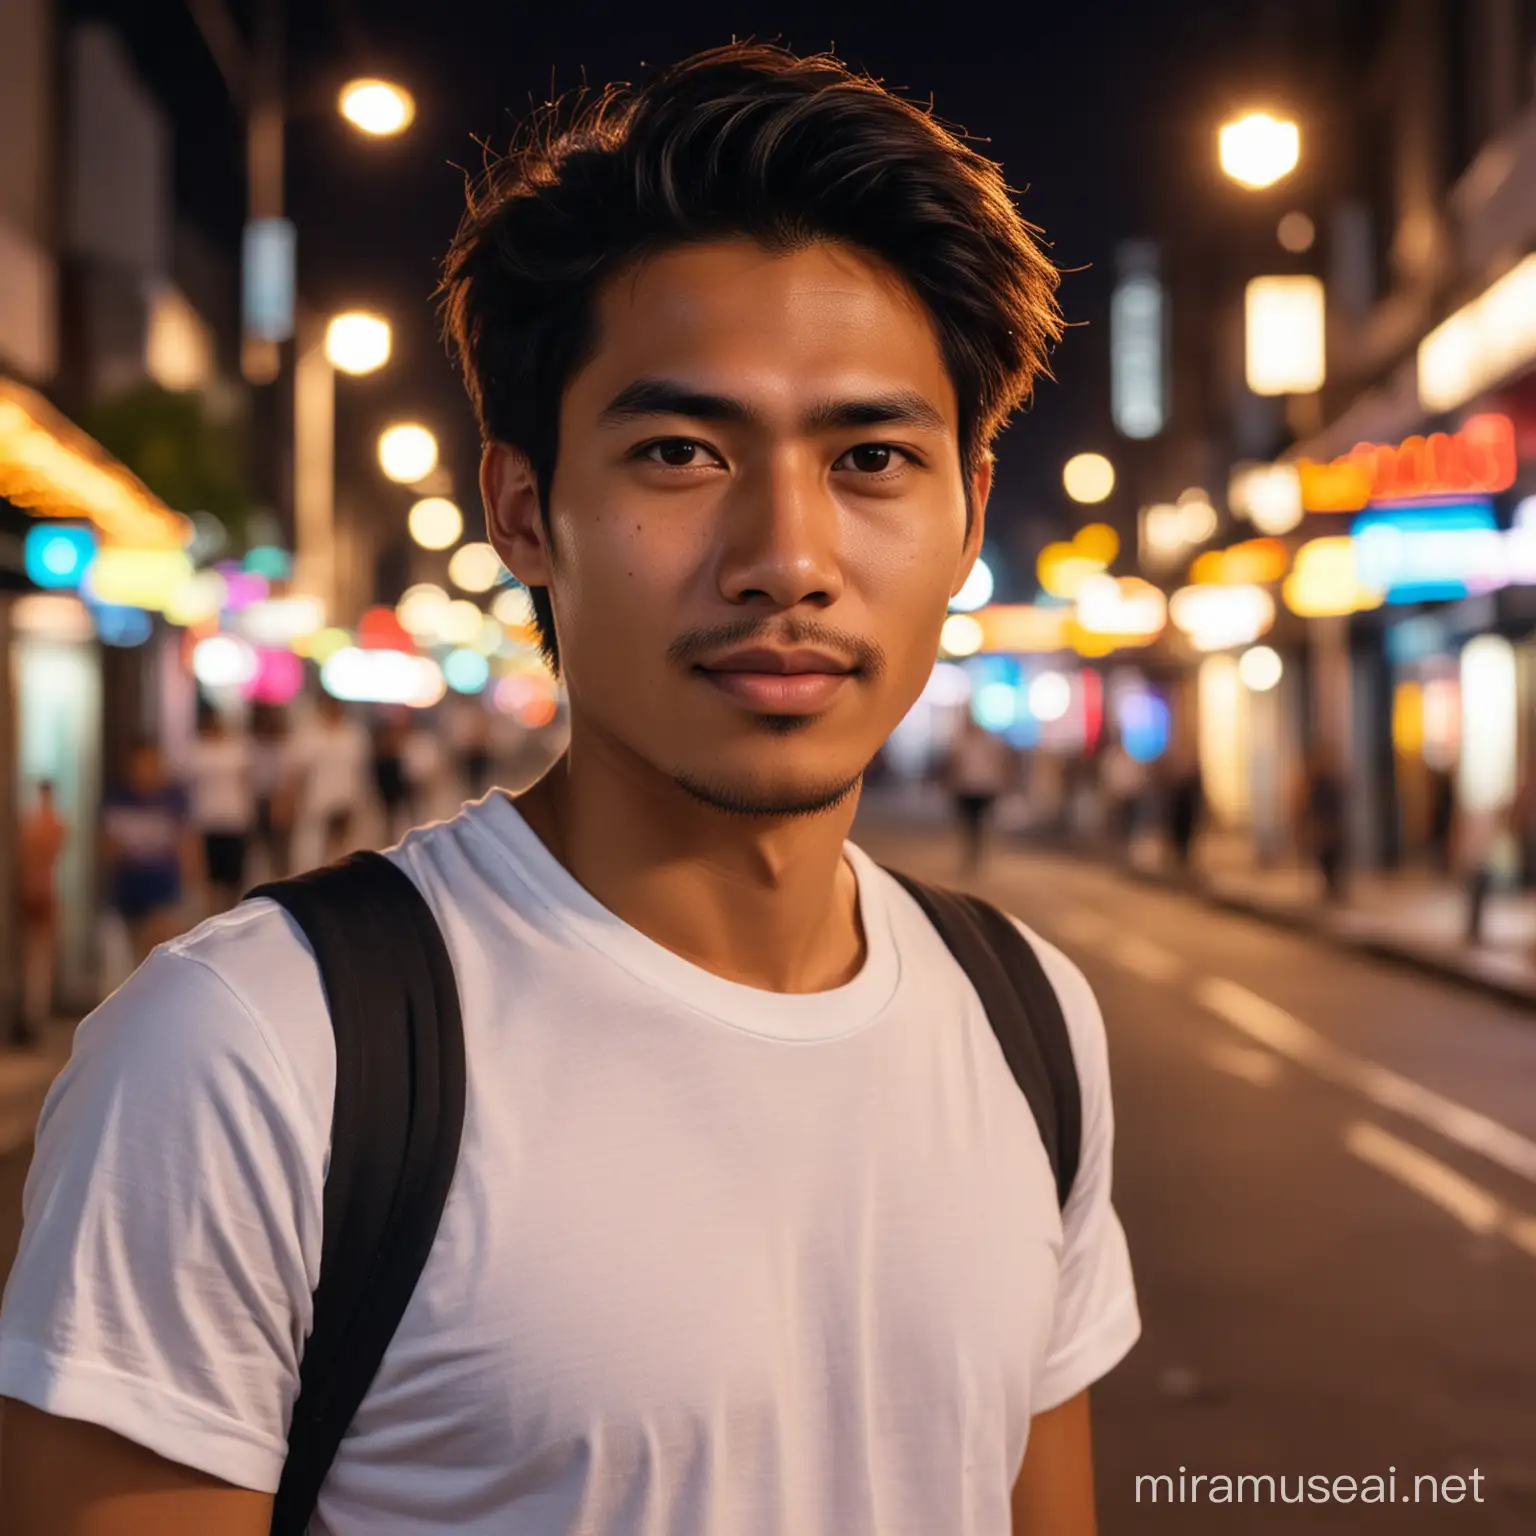 Foto pria indonesia umur25 tahun,rambut medium,baju kaos putih,lokasi jalan malam hari,cahaya lampu warna warni,bokeh